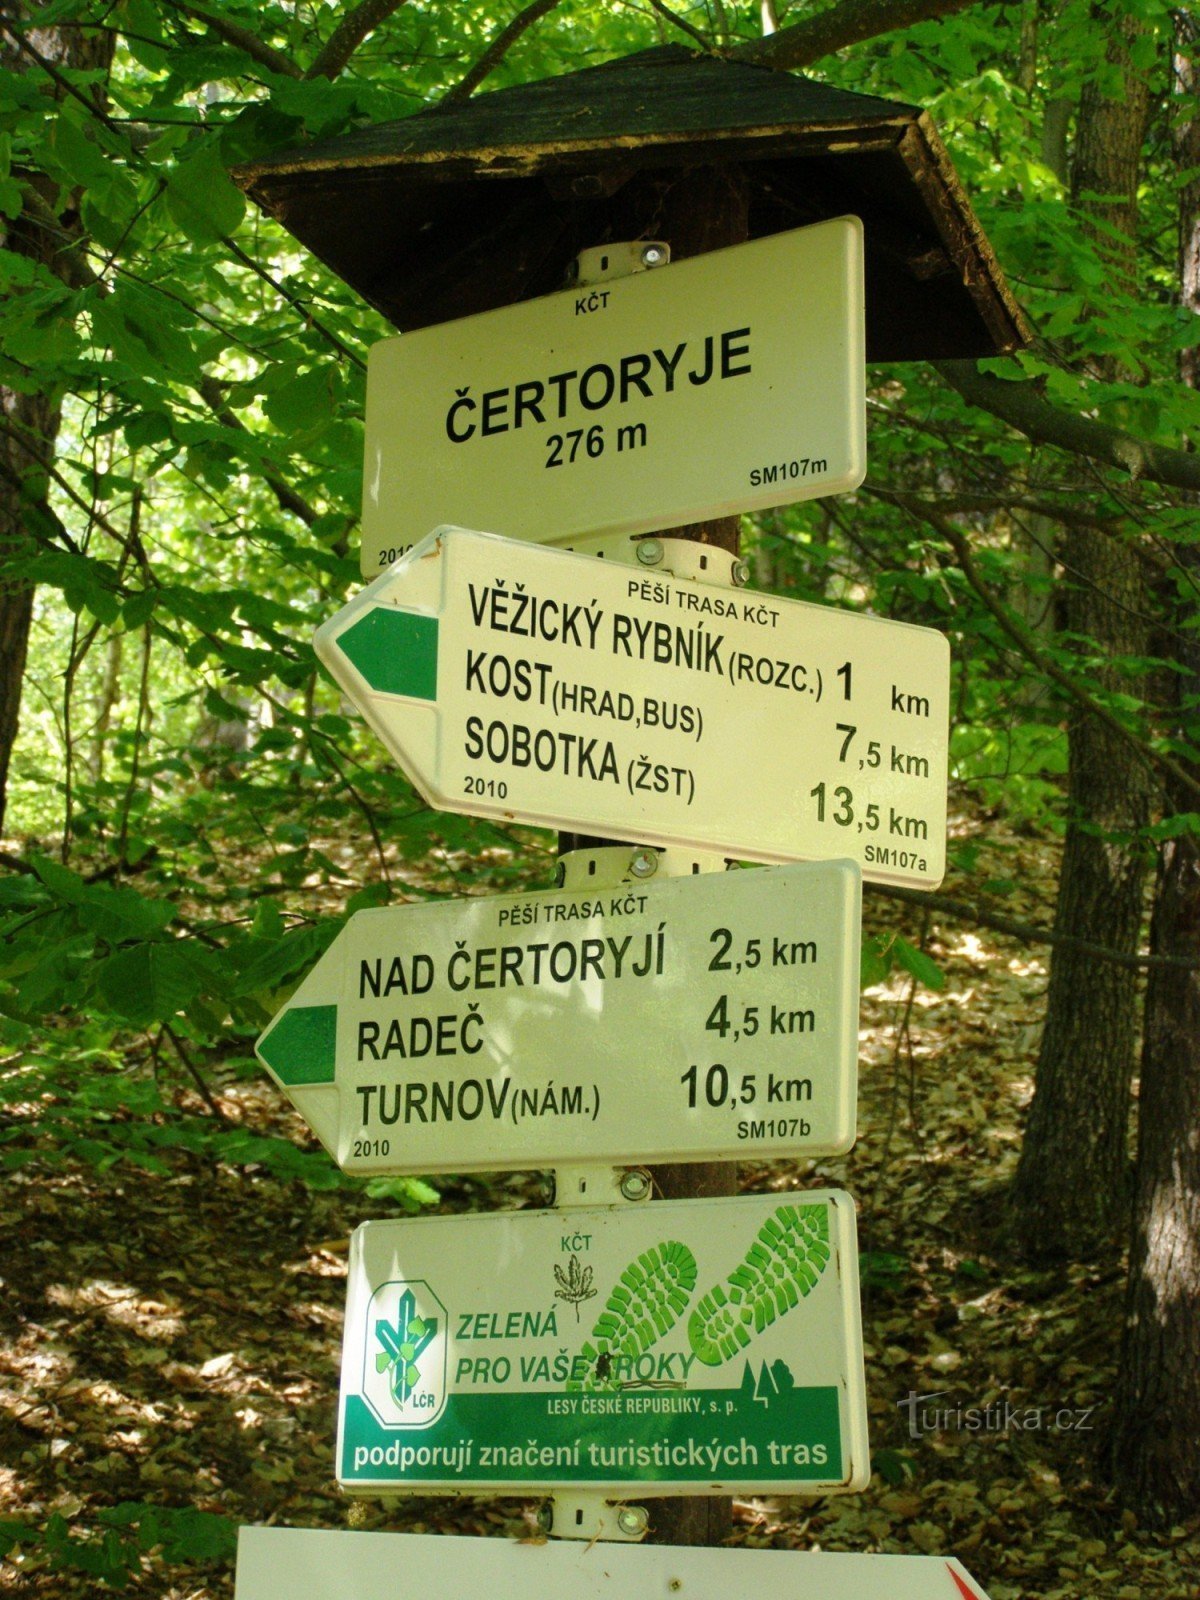 τουριστικό σταυροδρόμι του Čertoryje